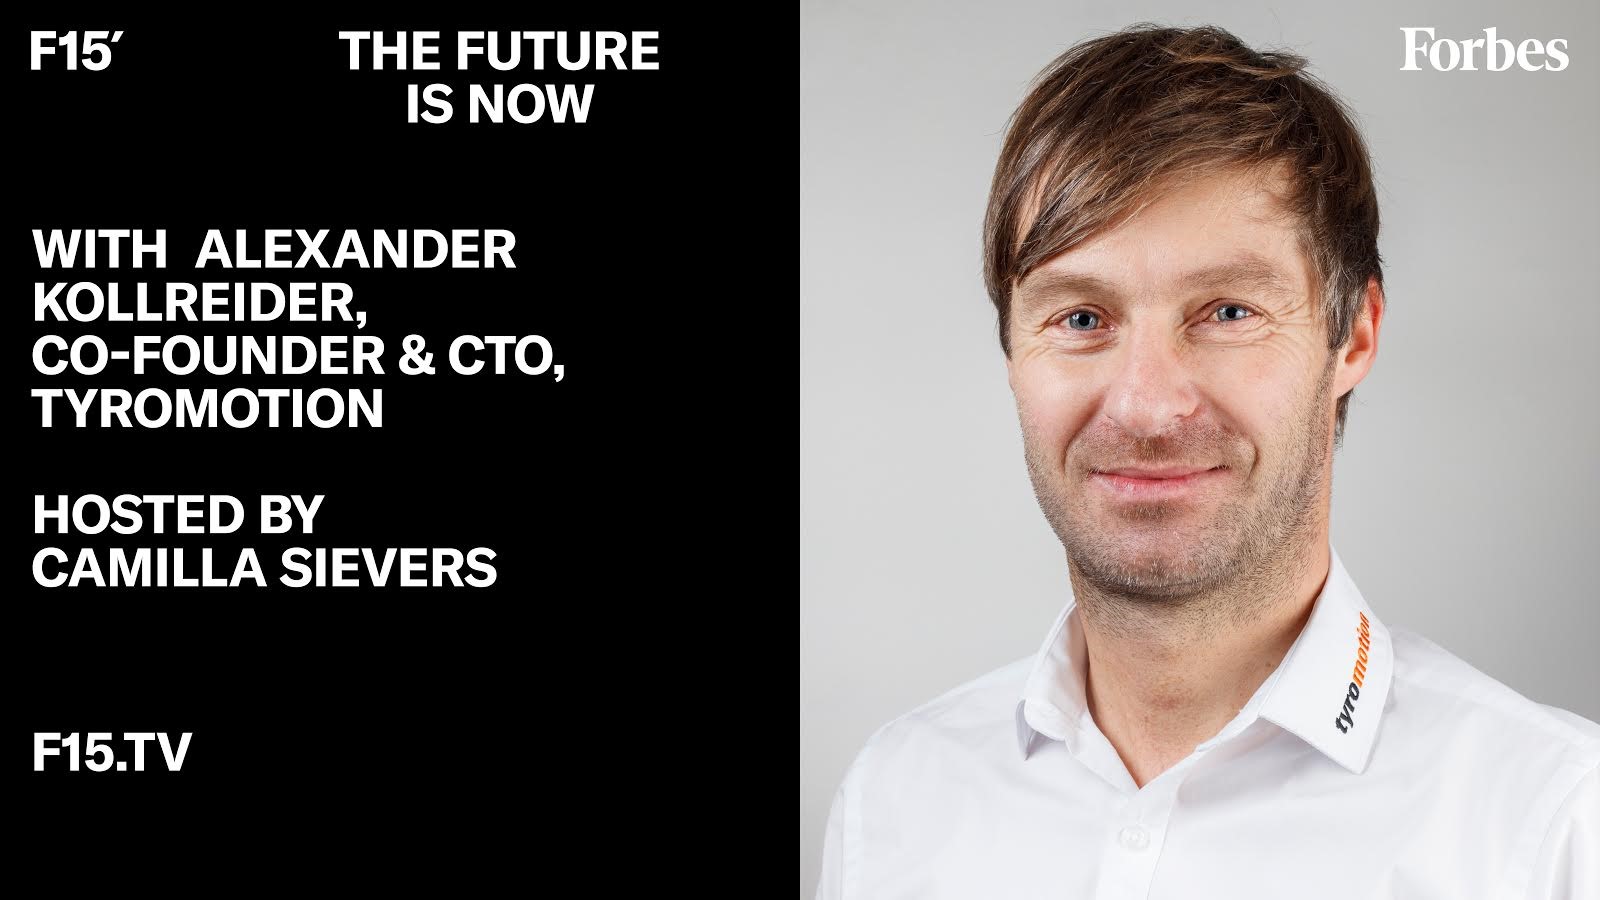 Geschäftsführer CTO von Tyromotion Alexander Kollreider @ Forbes mit weißem Hemd und Logobestickung